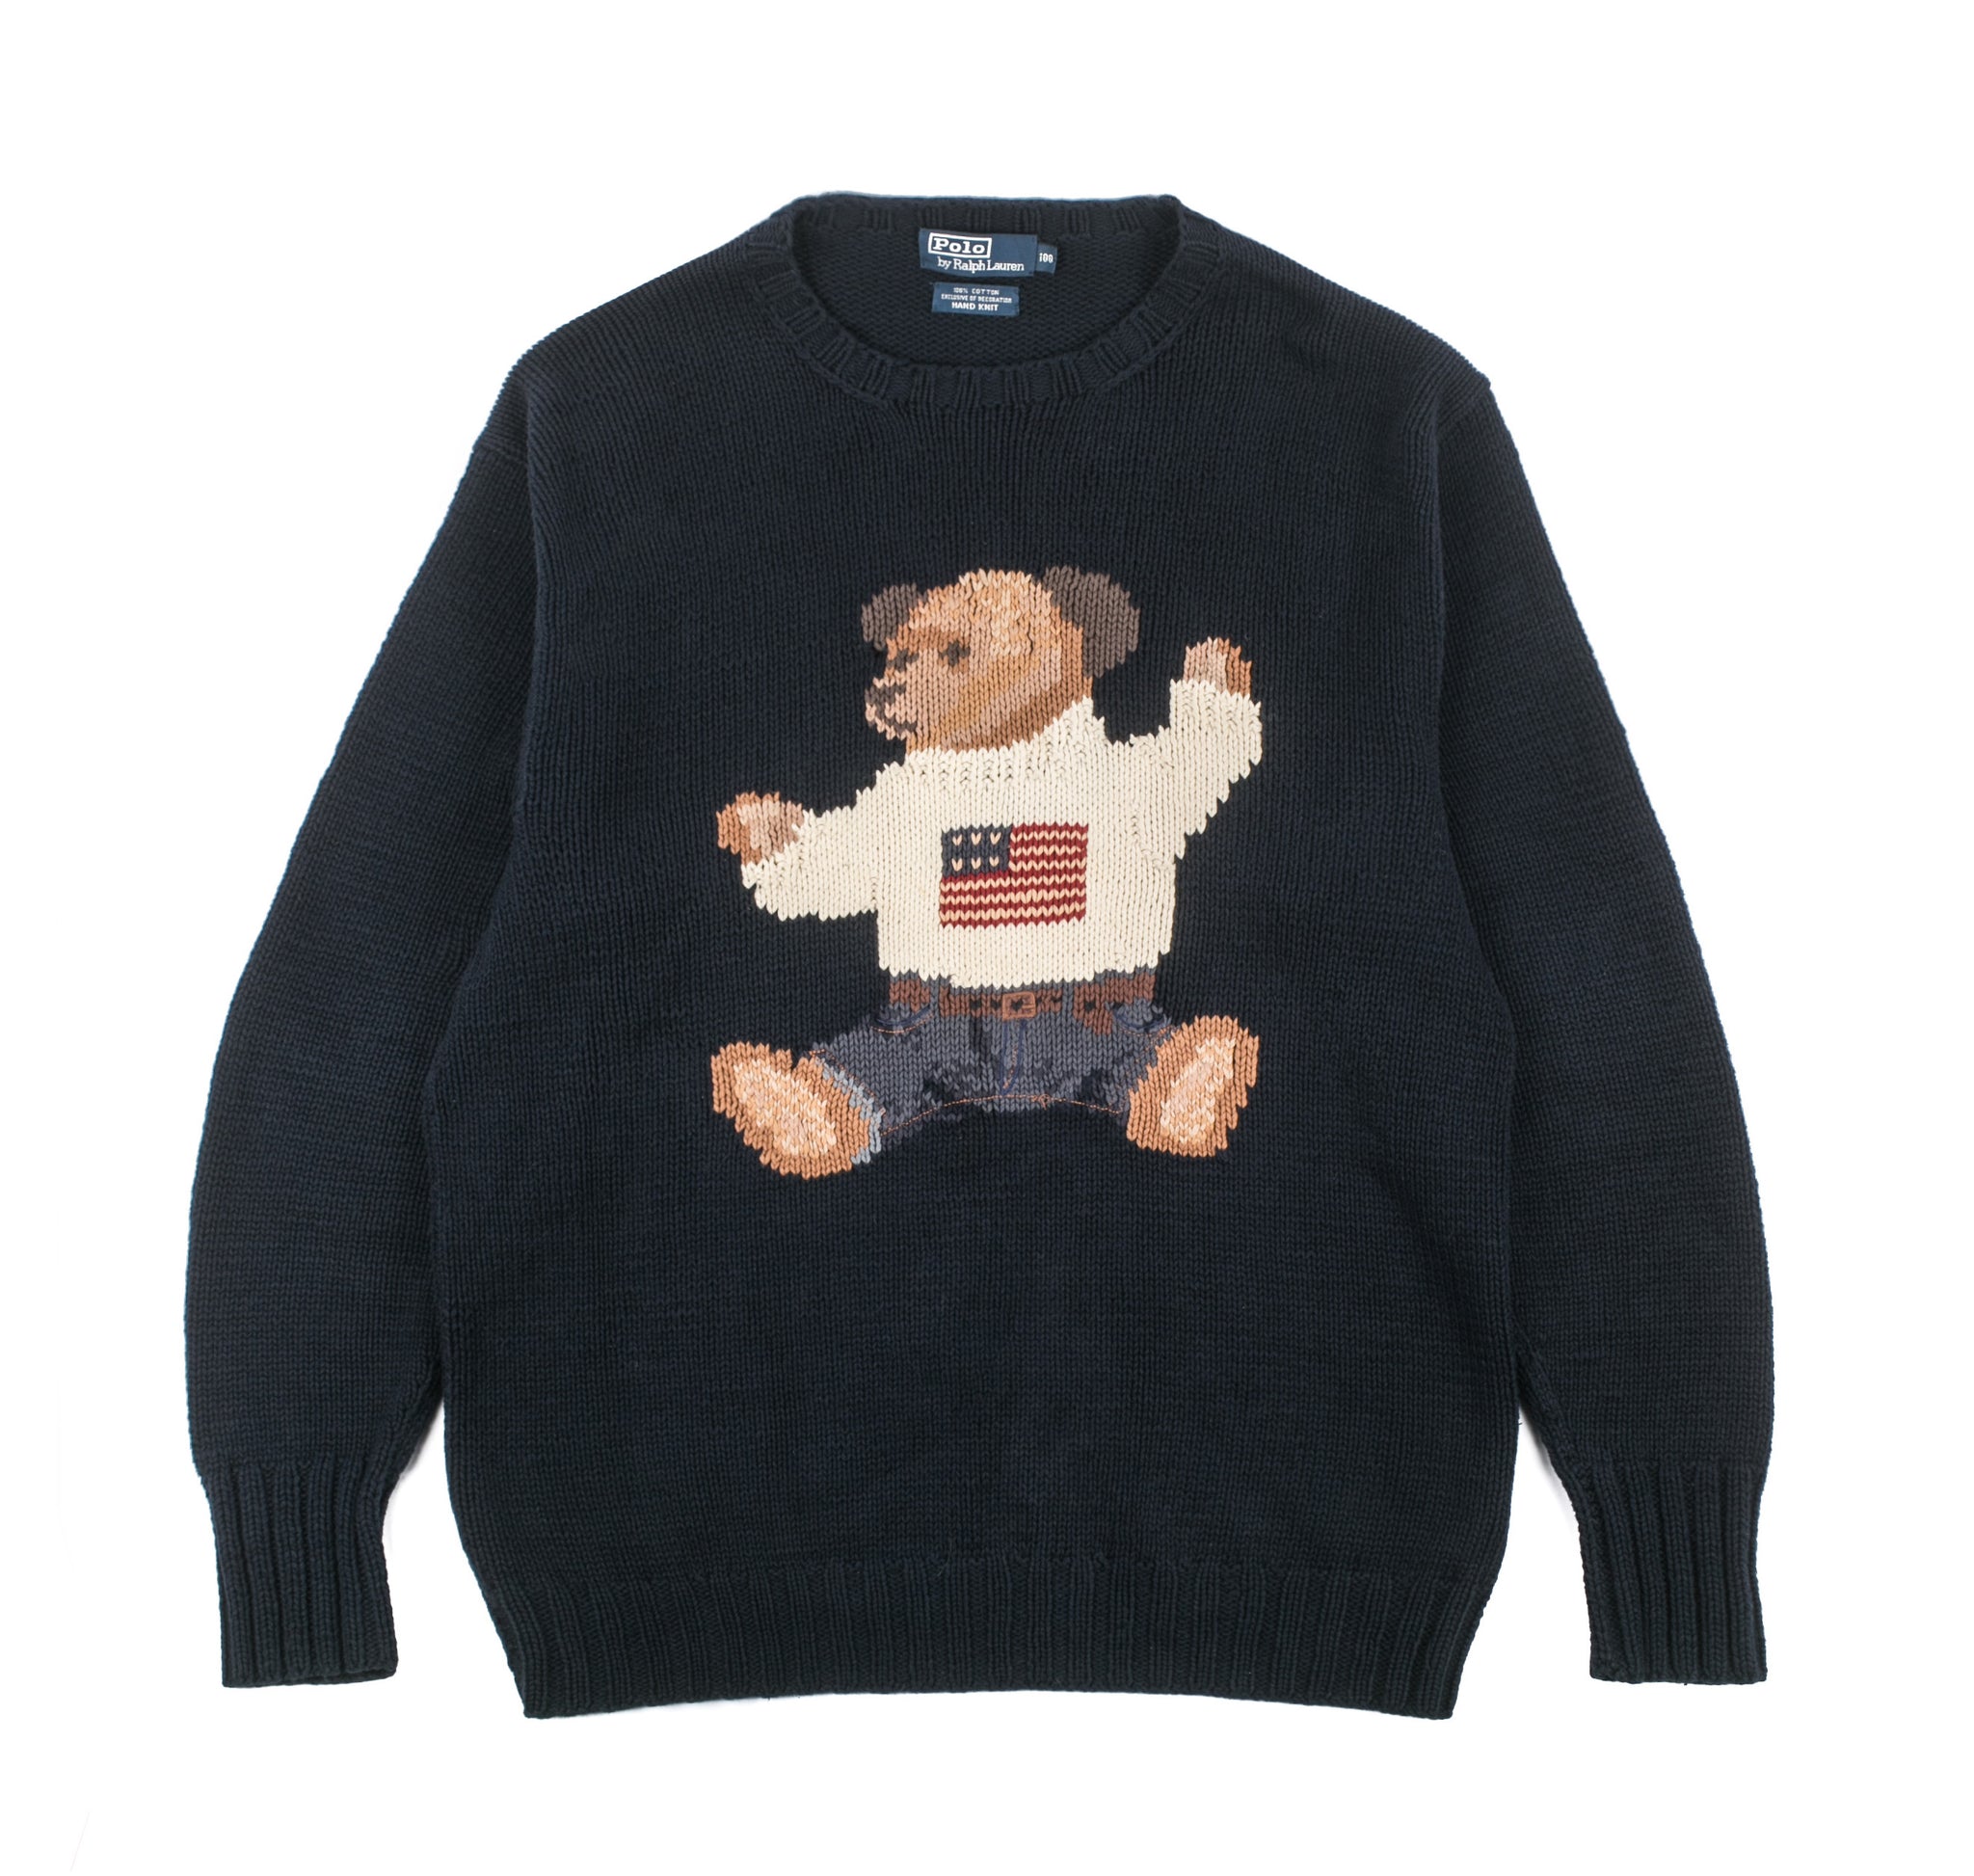 ralph lauren sweater vintage